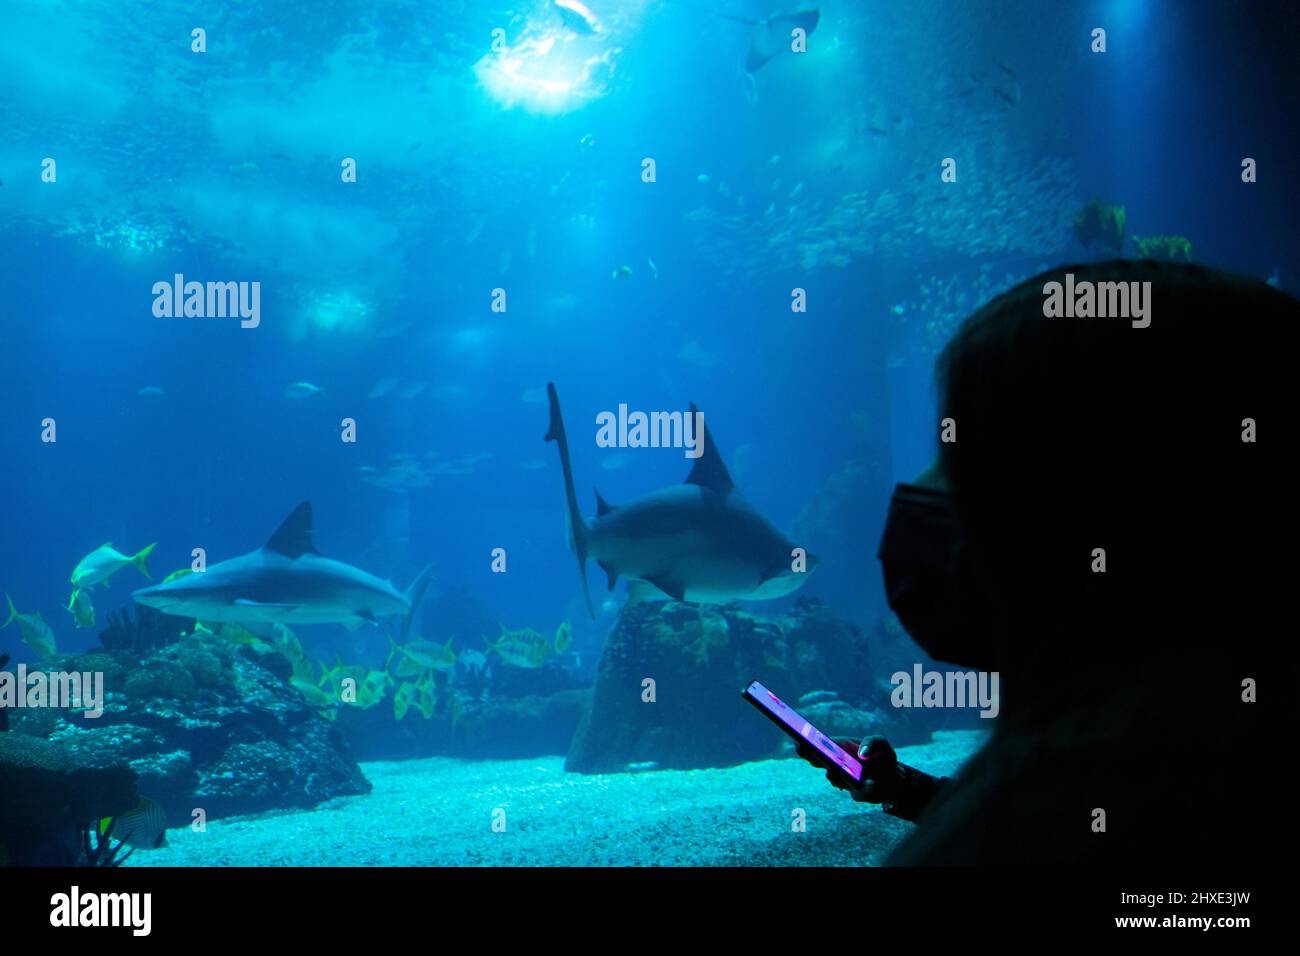 Joven observando tiburones en un gran tanque de peces. Observación de la vida oceánica con fines educativos. Foto de stock